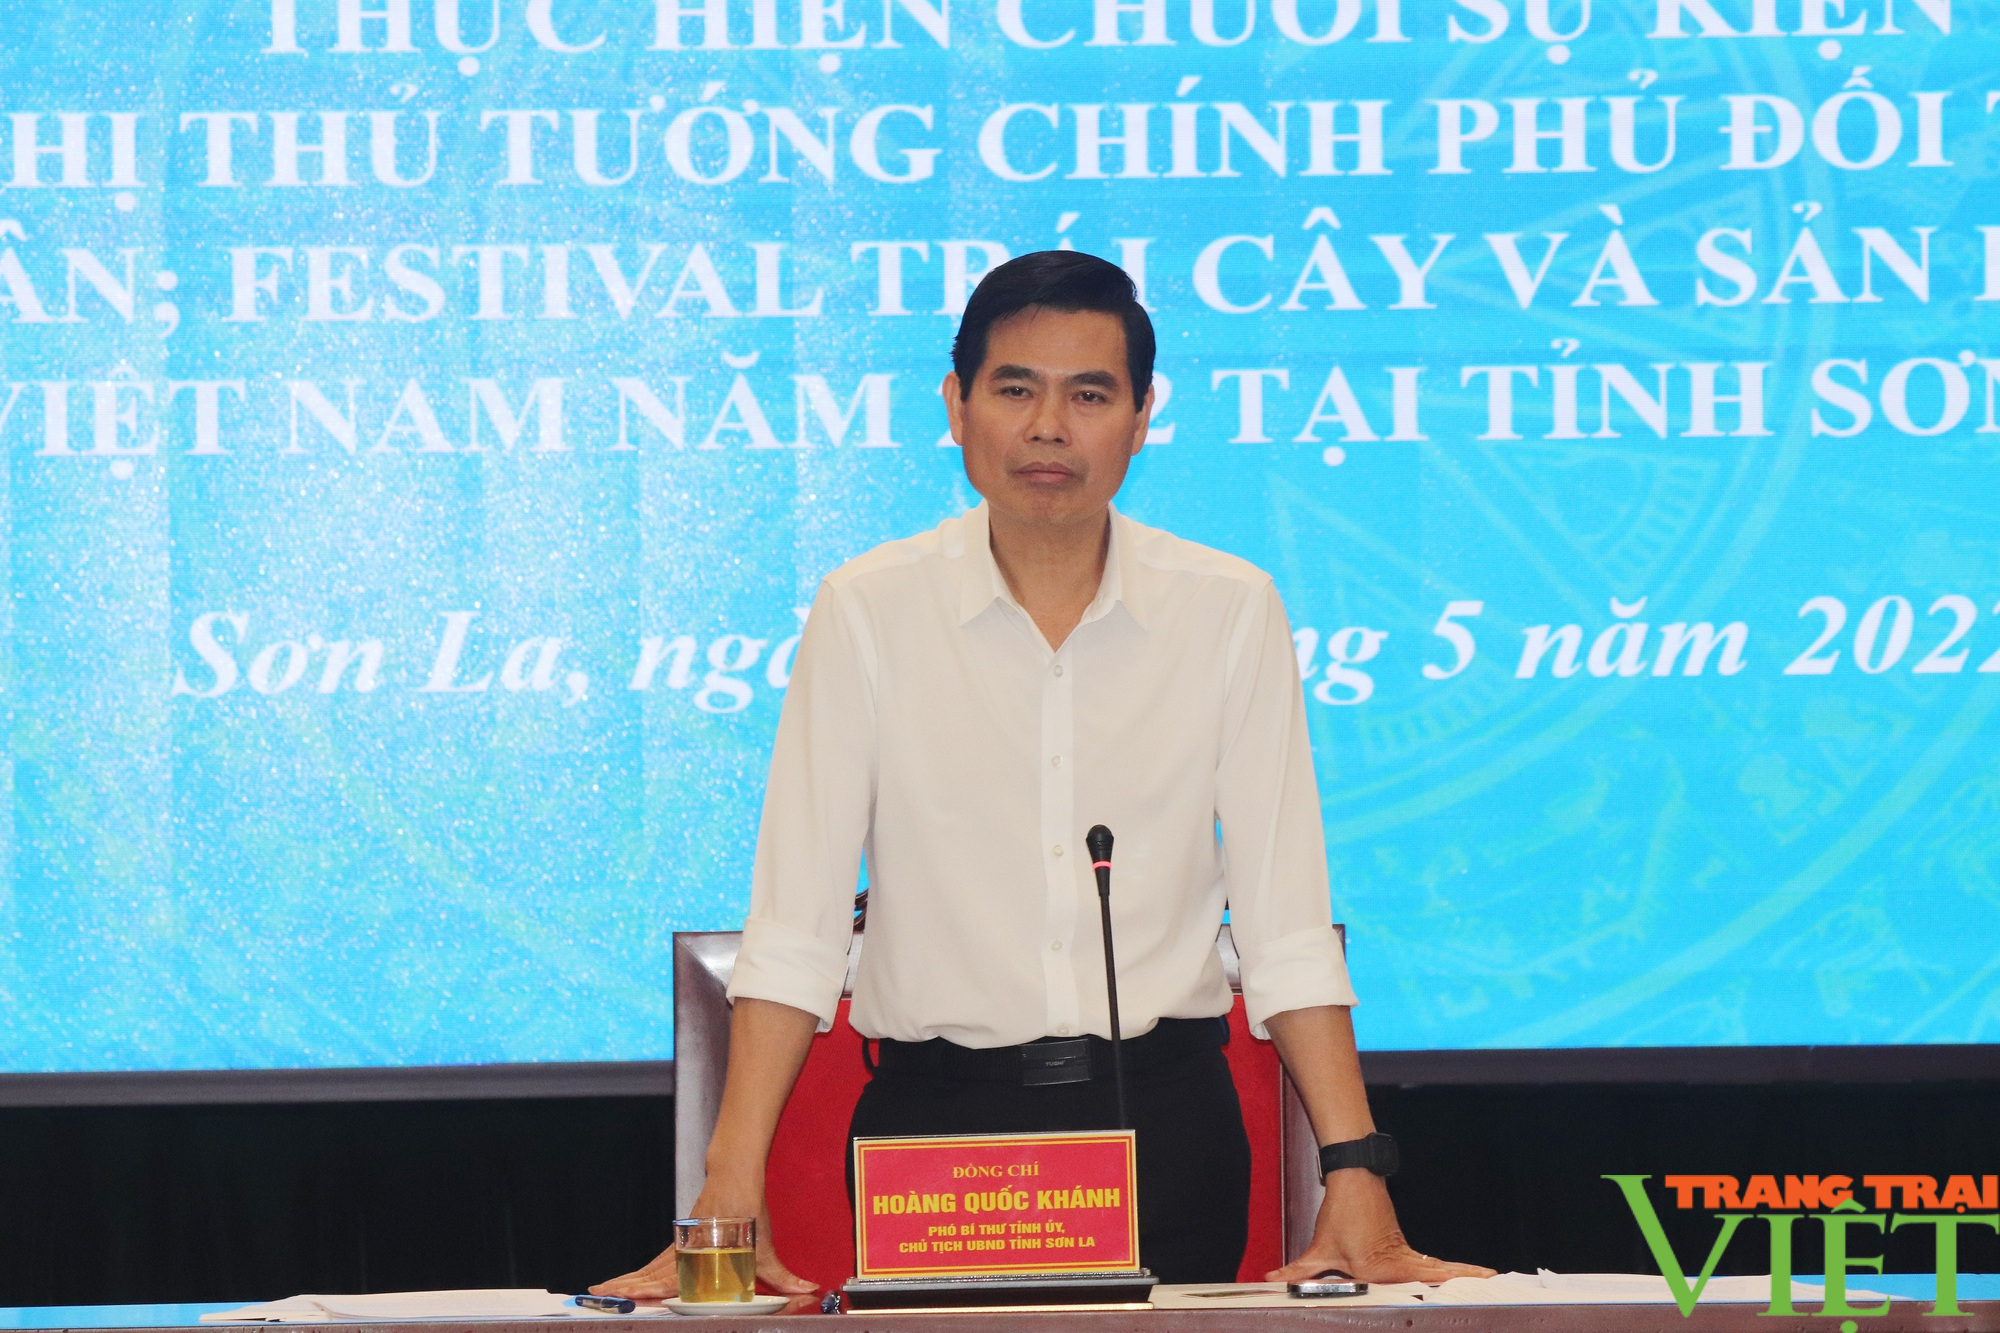 Chủ tịch tỉnh Sơn La: Trưởng các Tiểu ban phải chịu trách nhiệm trong việc thực hiện nhiệm vụ được giao - Ảnh 2.